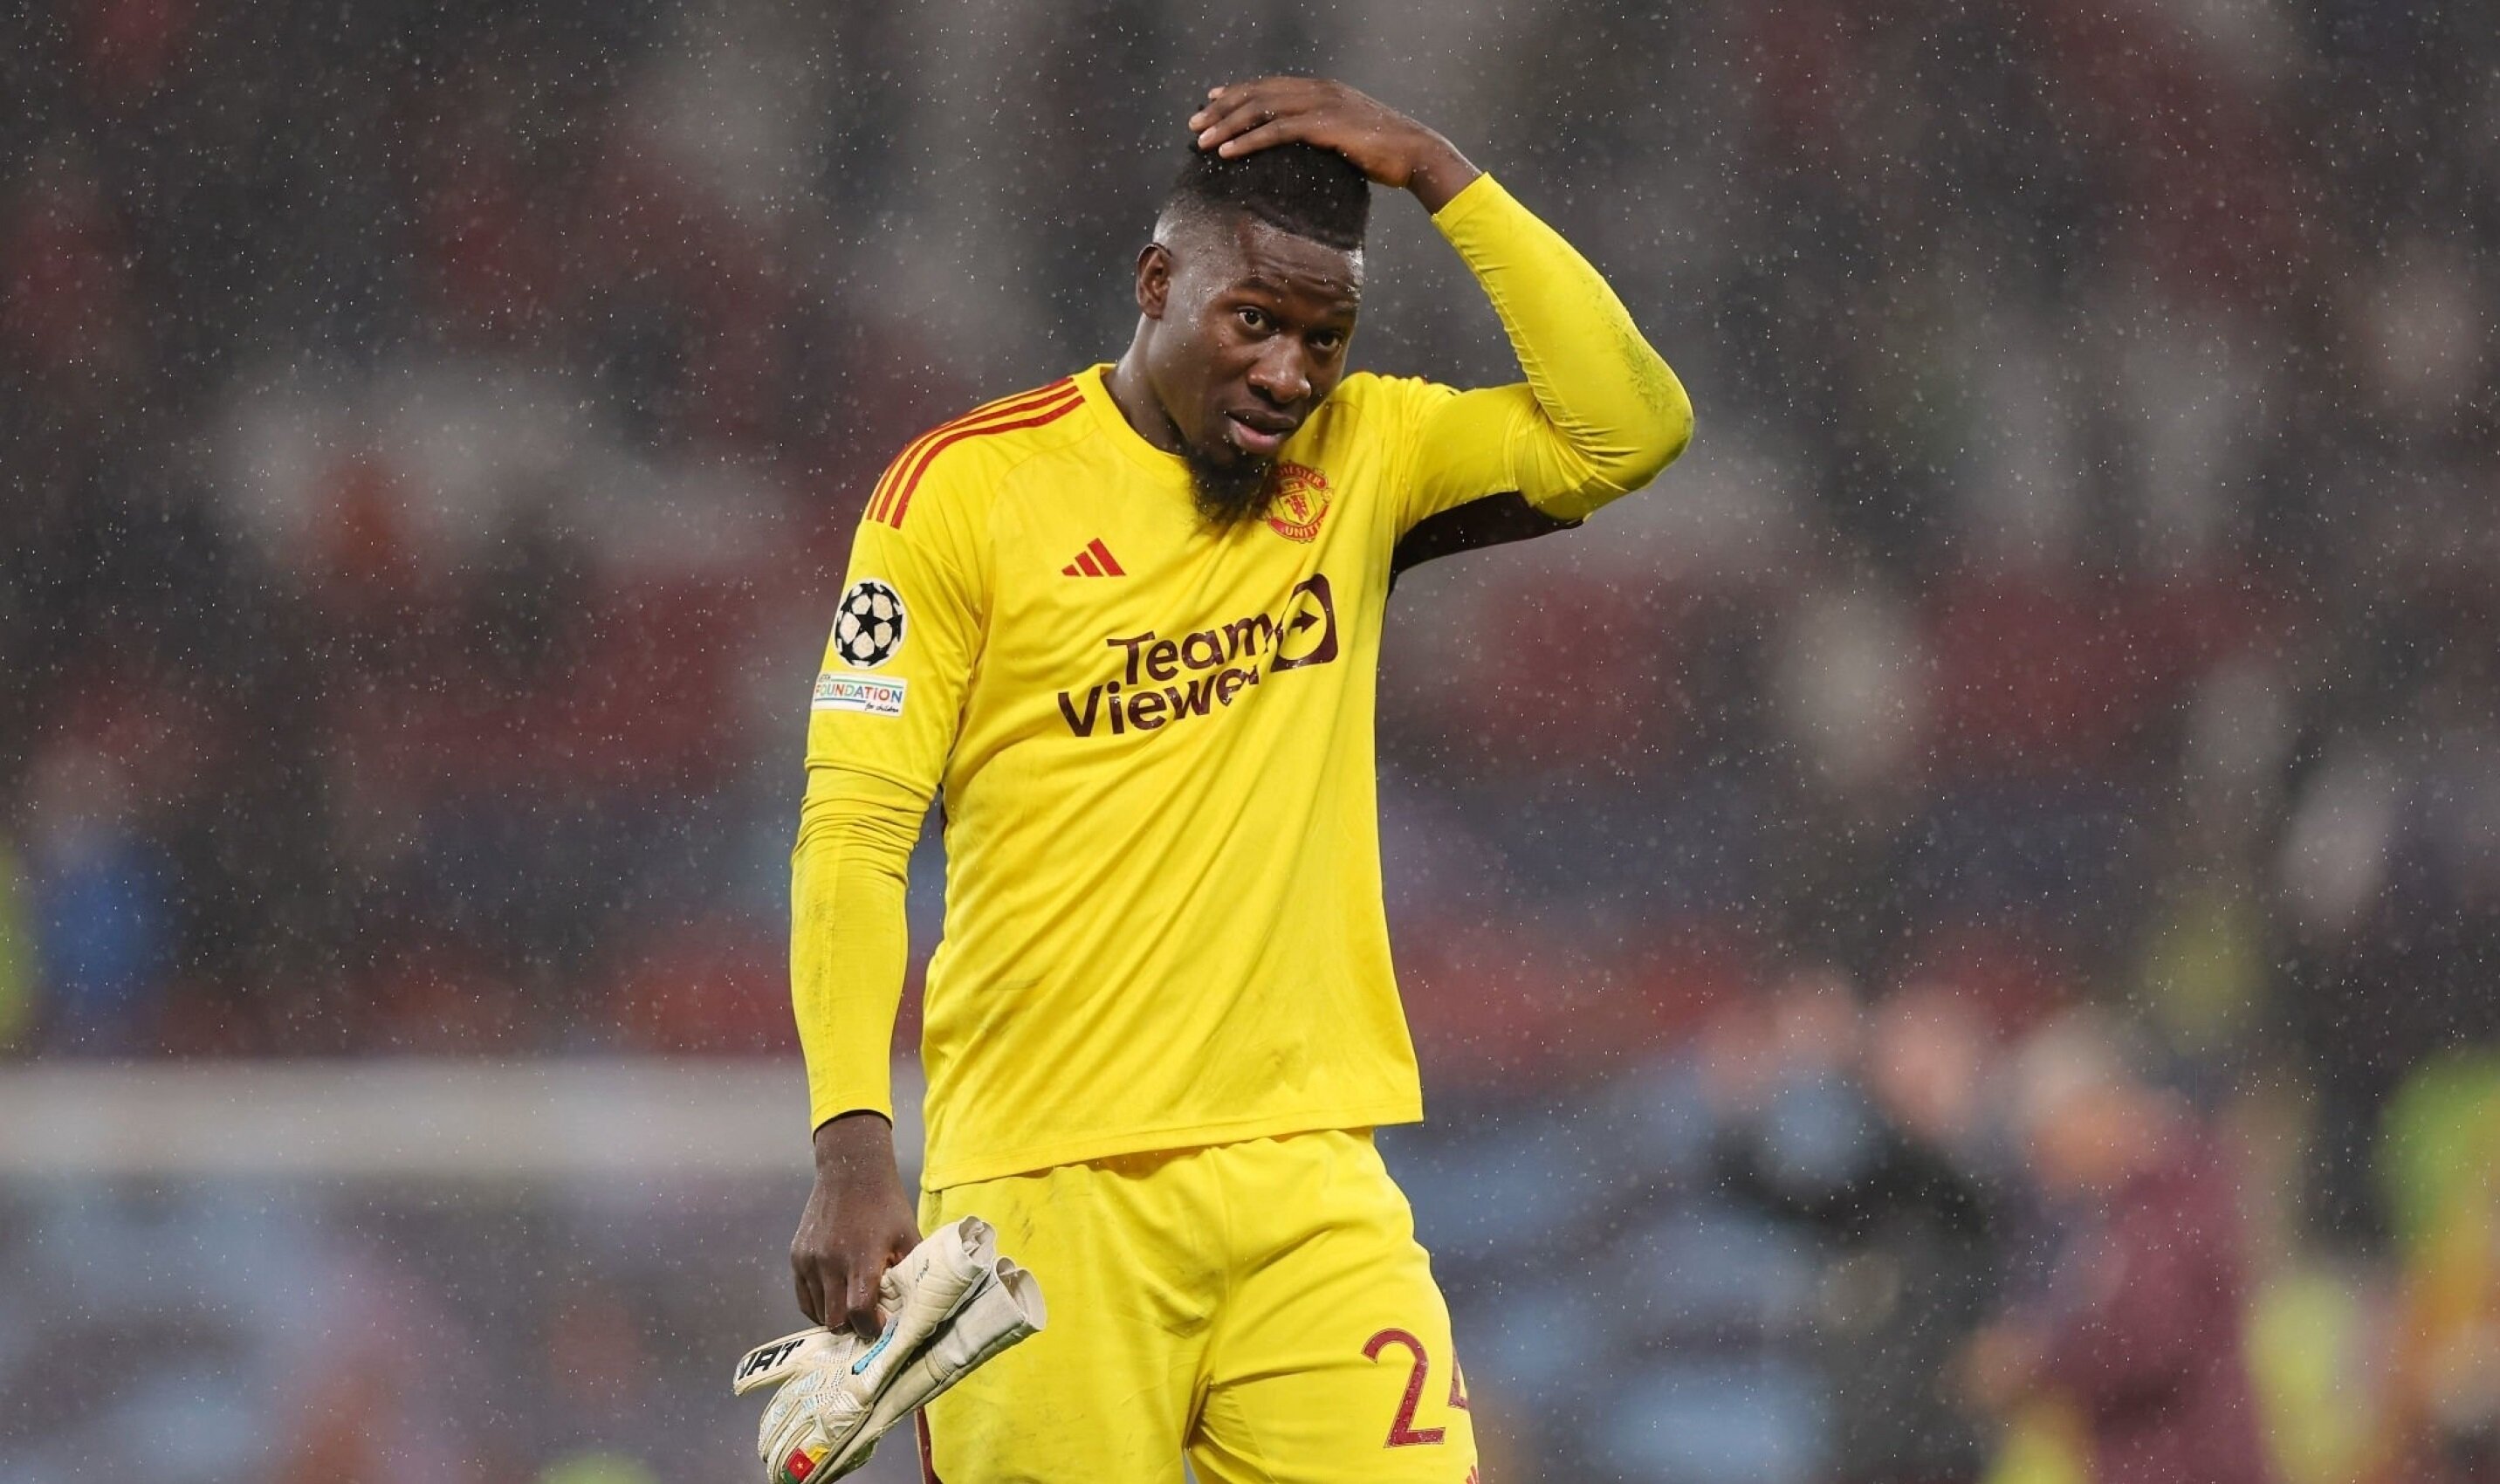 Báo Anh: Onana muốn rút khỏi ĐT Cameroon, nguy cơ bị cấm thi đấu ở Man Utd